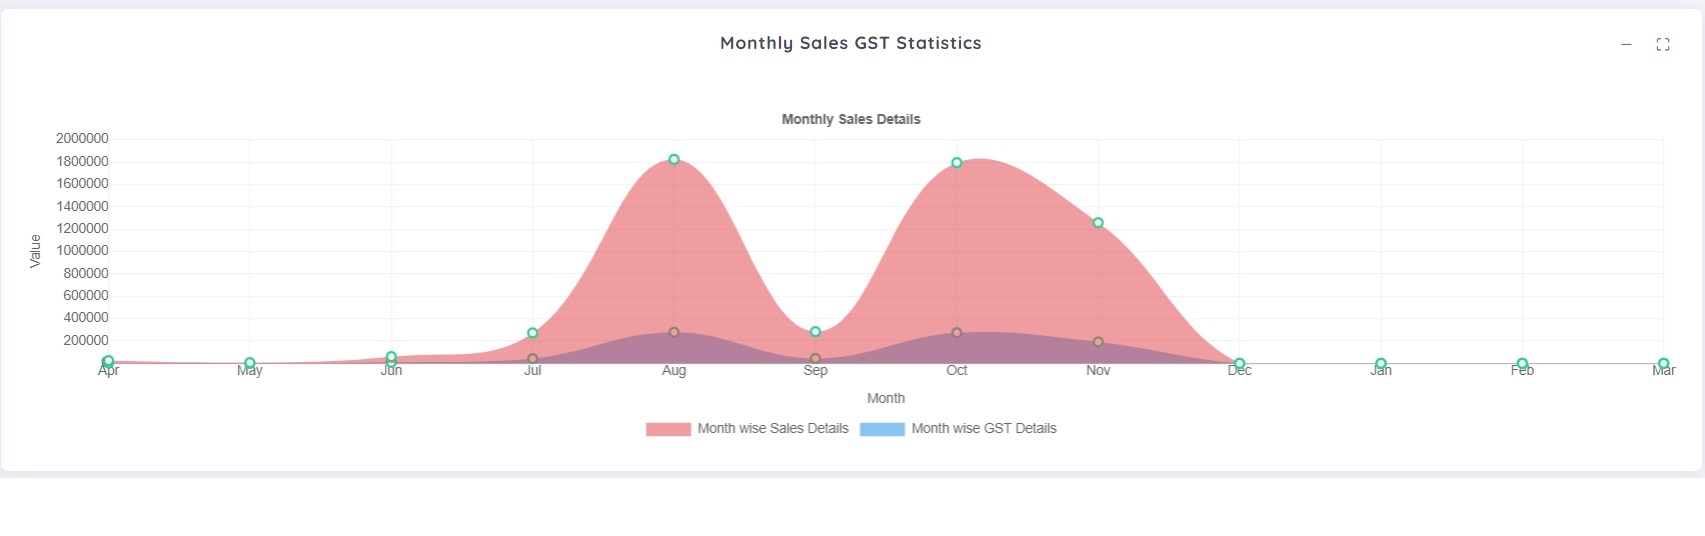 Sales revenue & GST